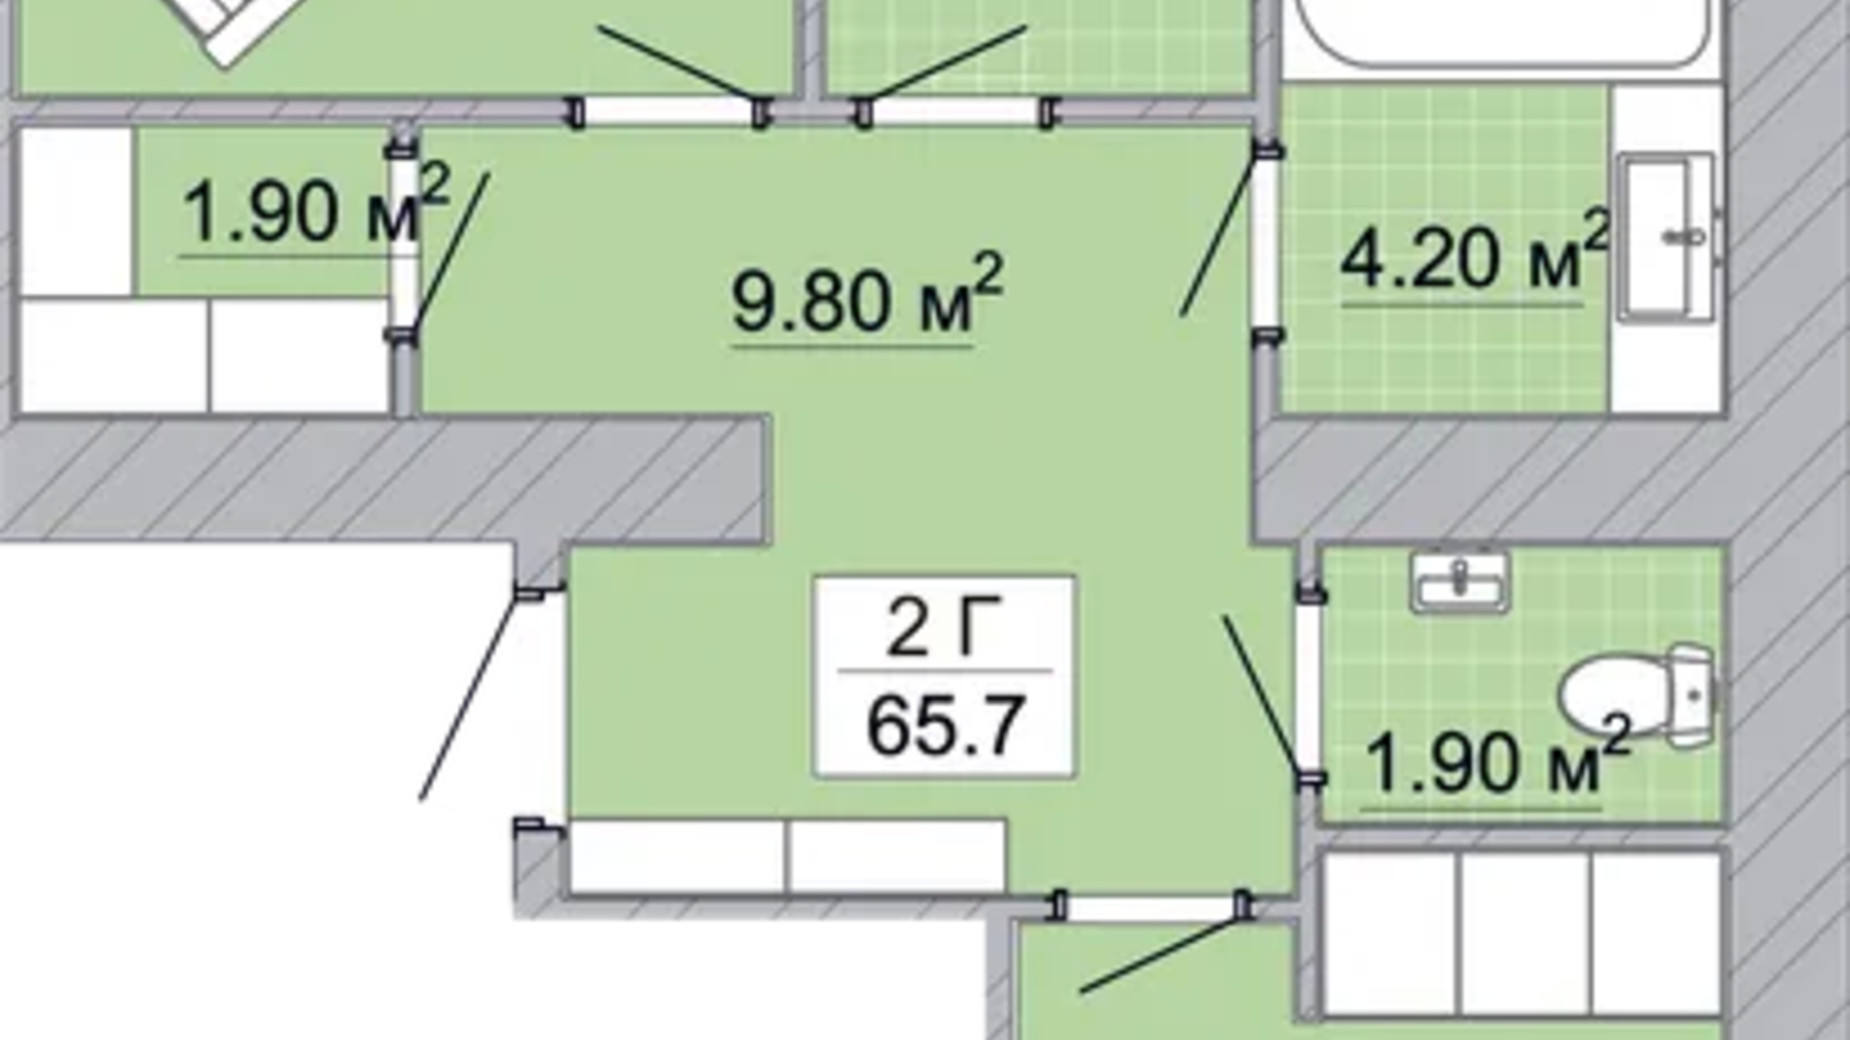 Планування 2-кімнатної квартири в Житловий район Княгинин 65.7 м², фото 706454